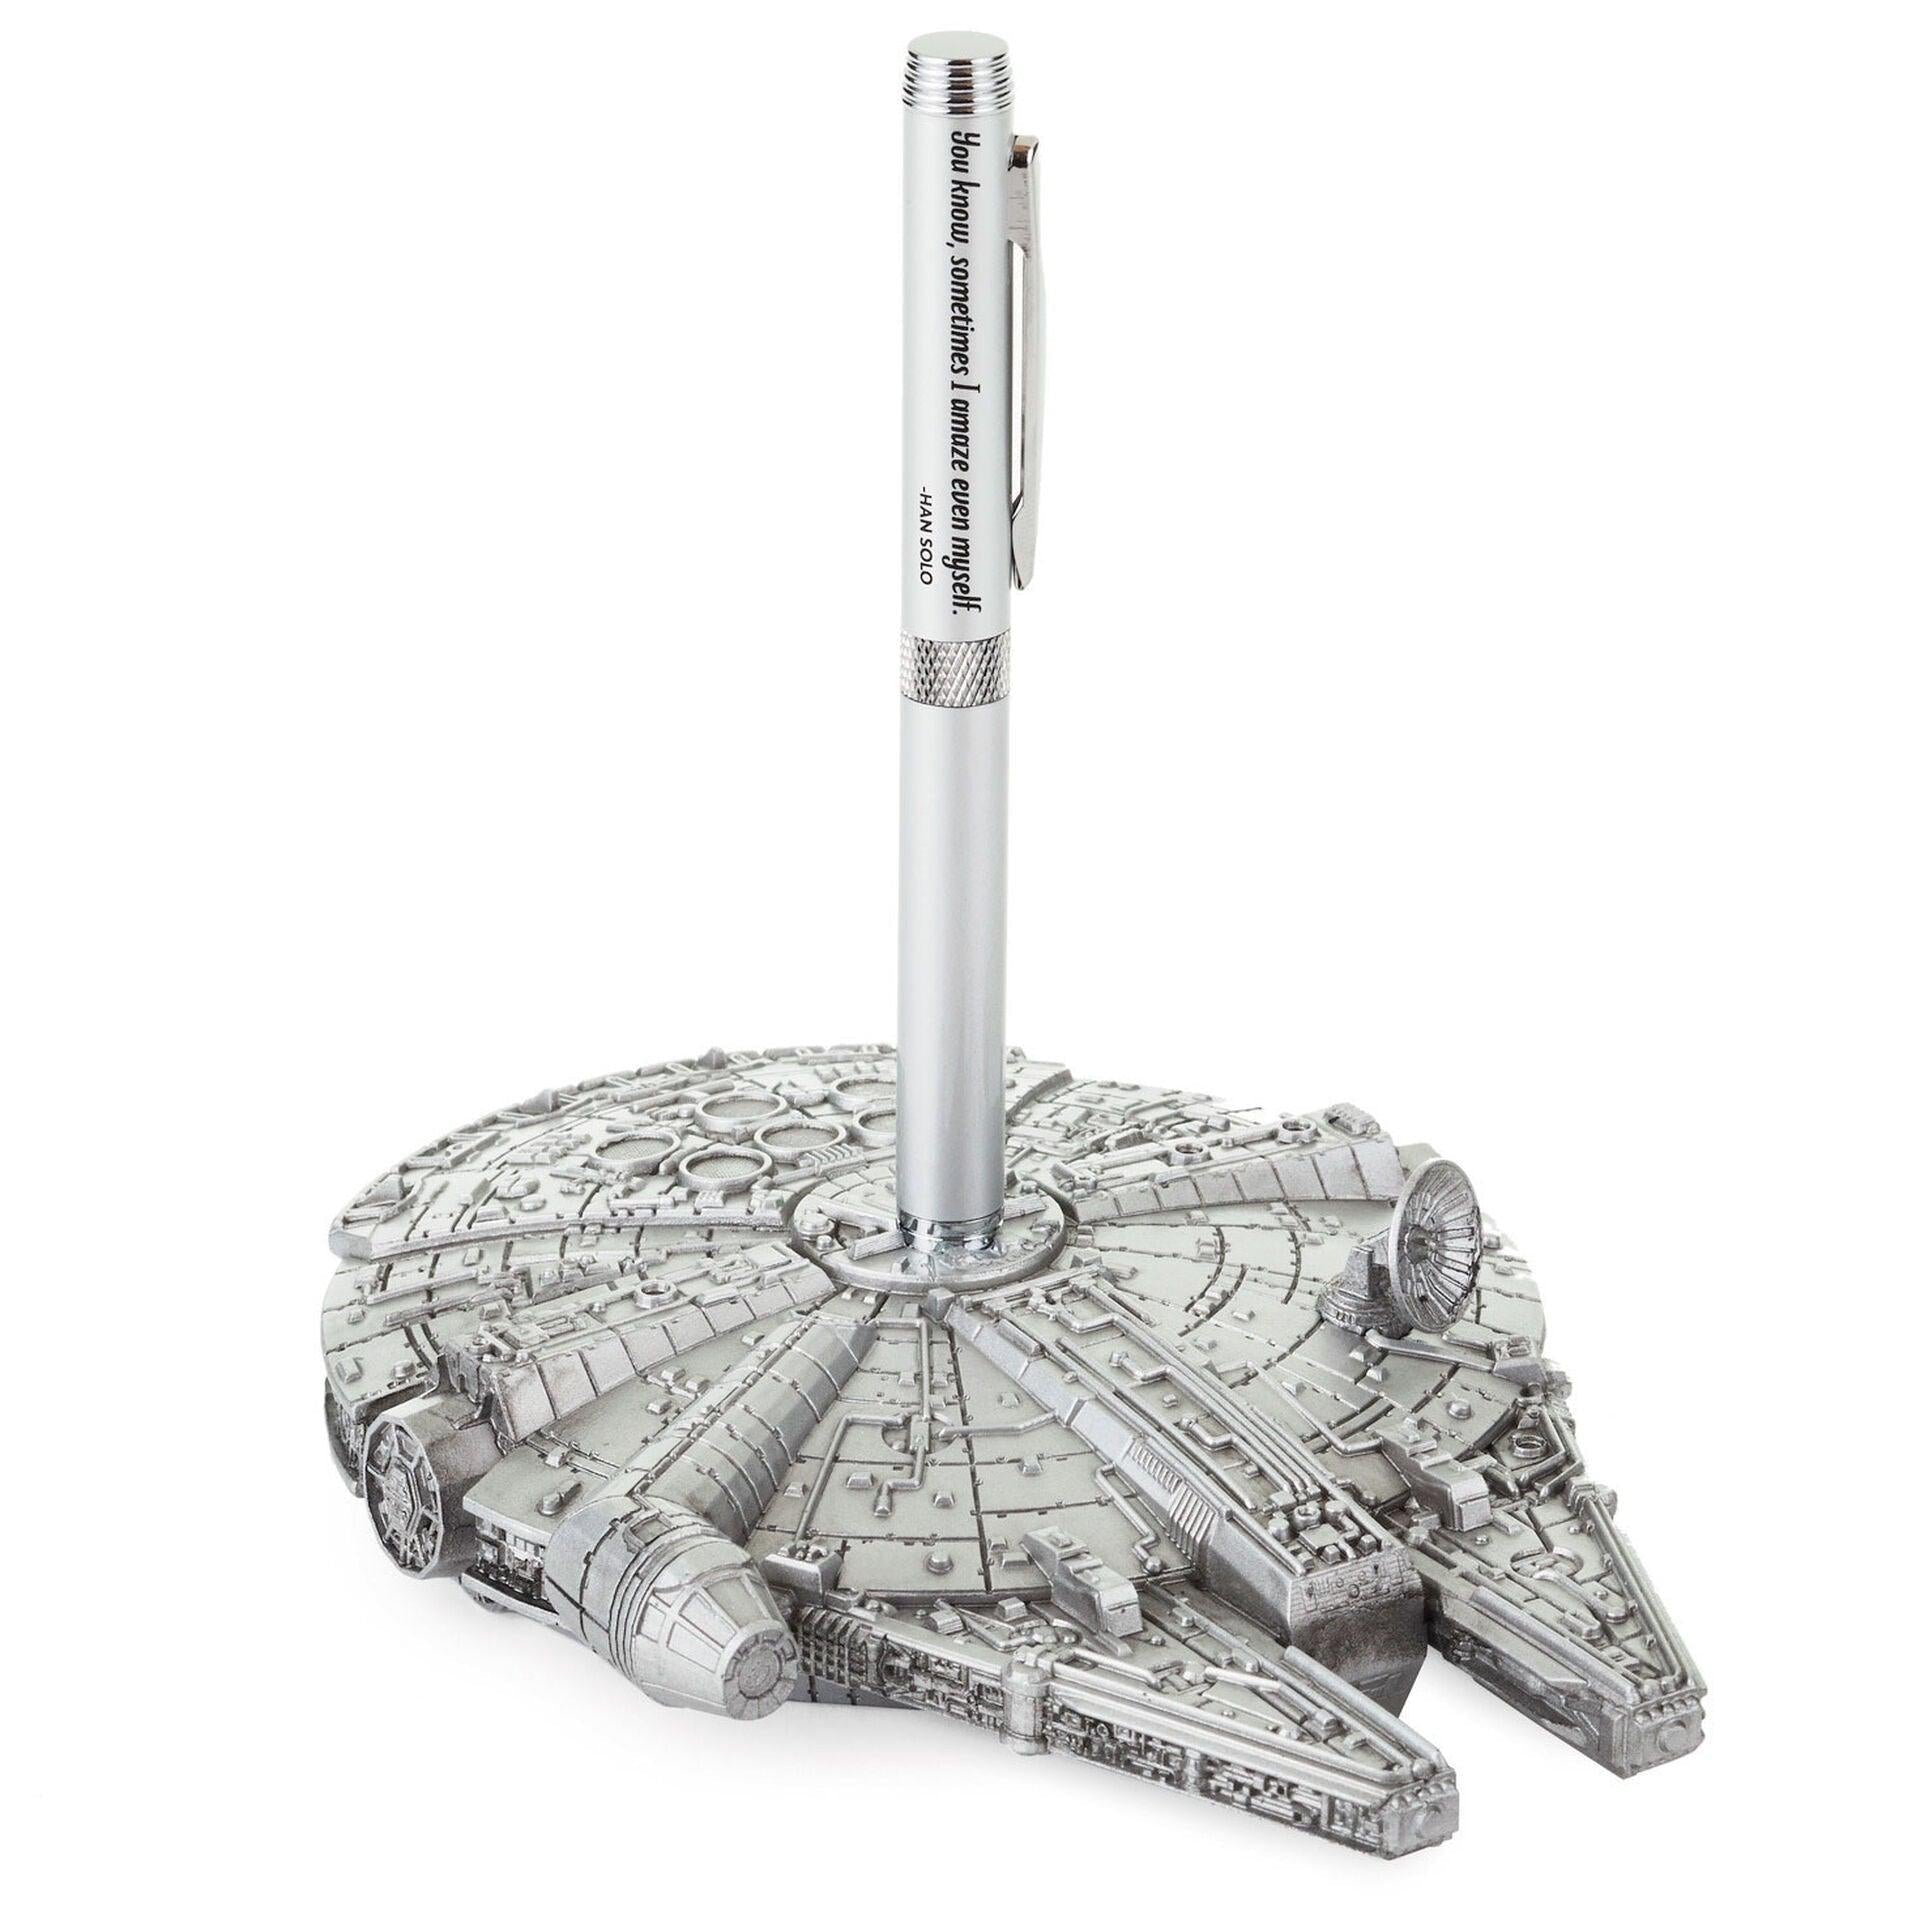 Star Wars Millennium Falcon Desk Accessory With Pen